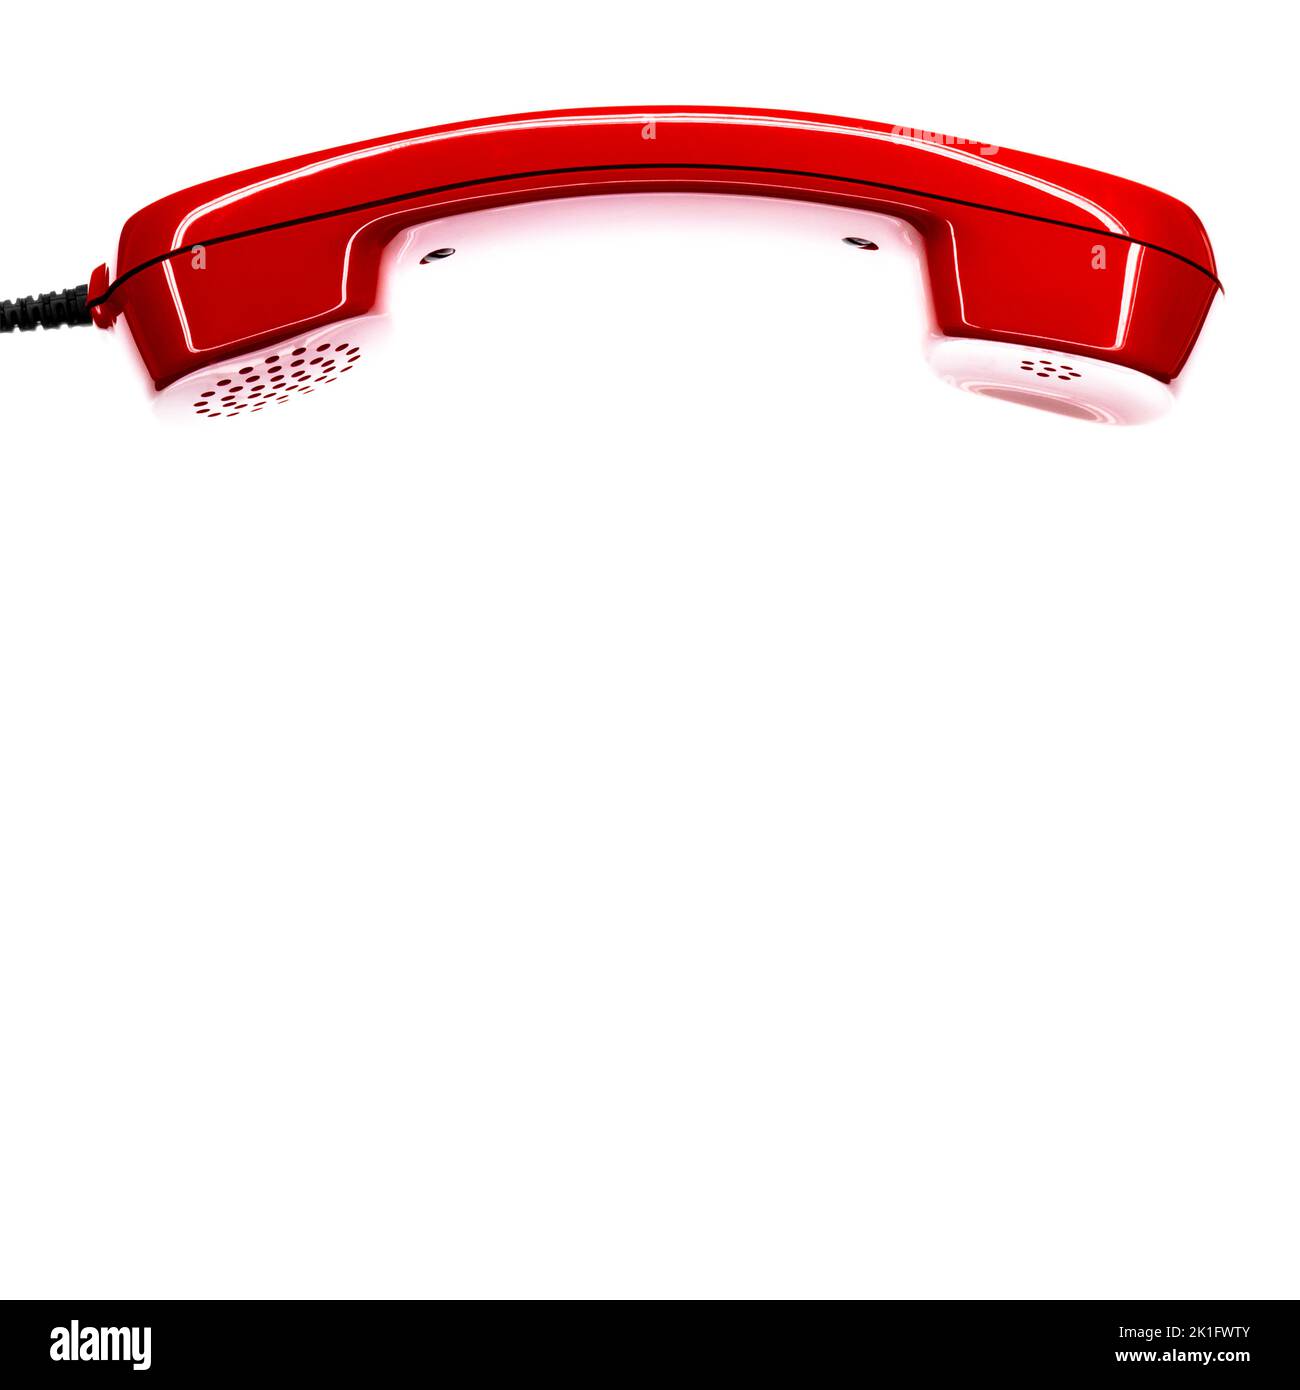 Ricevitore rosso di un telefono vintage degli anni '80 isolato su sfondo bianco Foto Stock